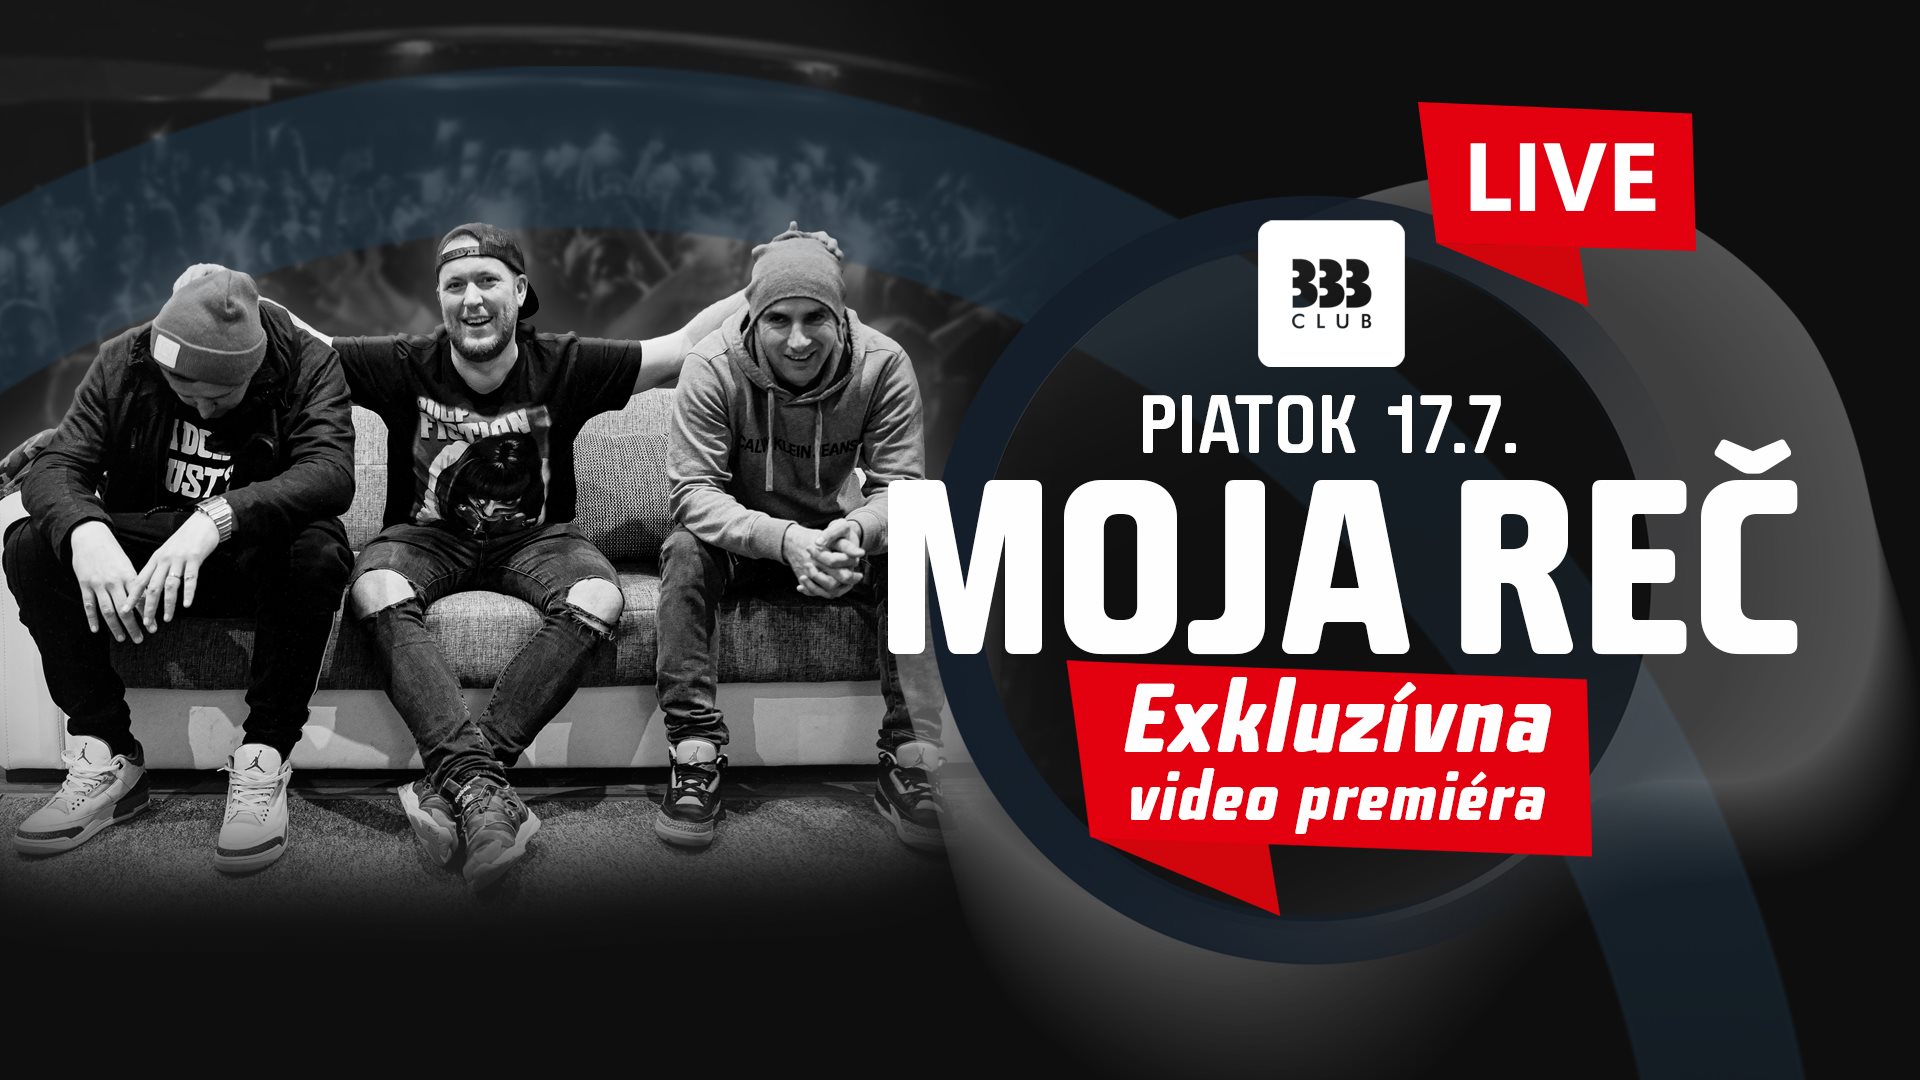 MOJA REČ /// Exkluzívna video premiéra ♛ 17.7. Club 333